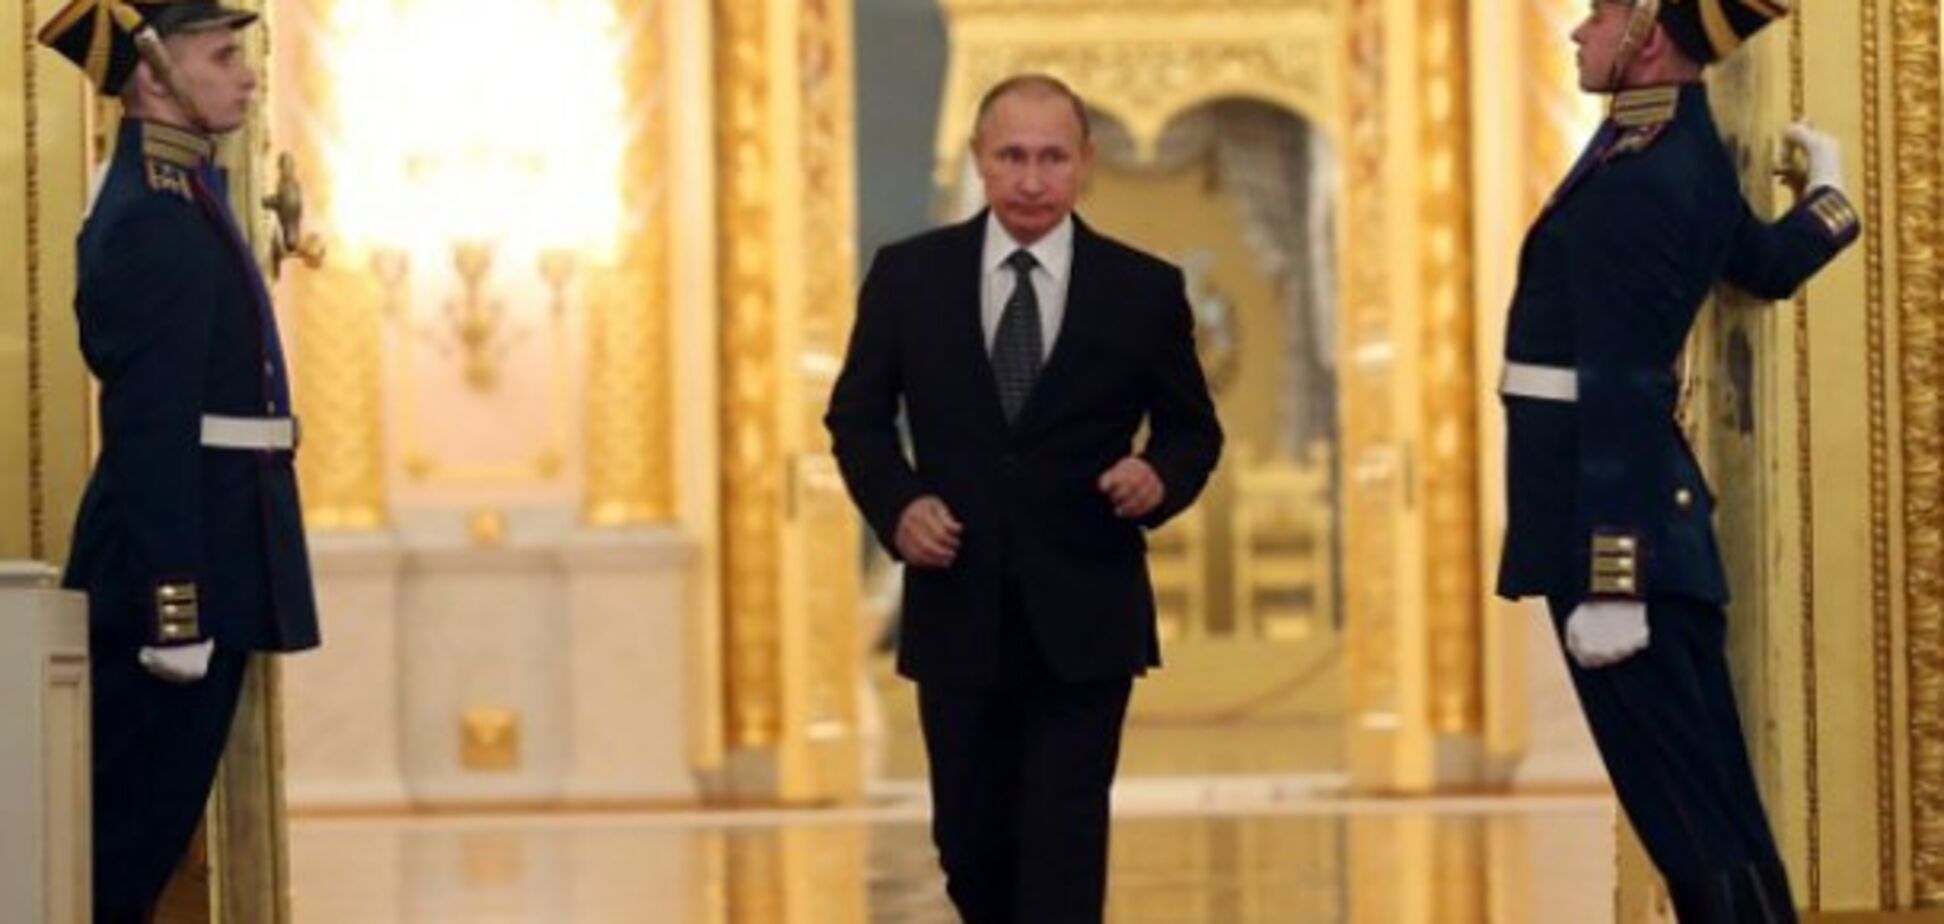 Аннексия Крыма и война на Донбассе 'зацементировали' Путина в России